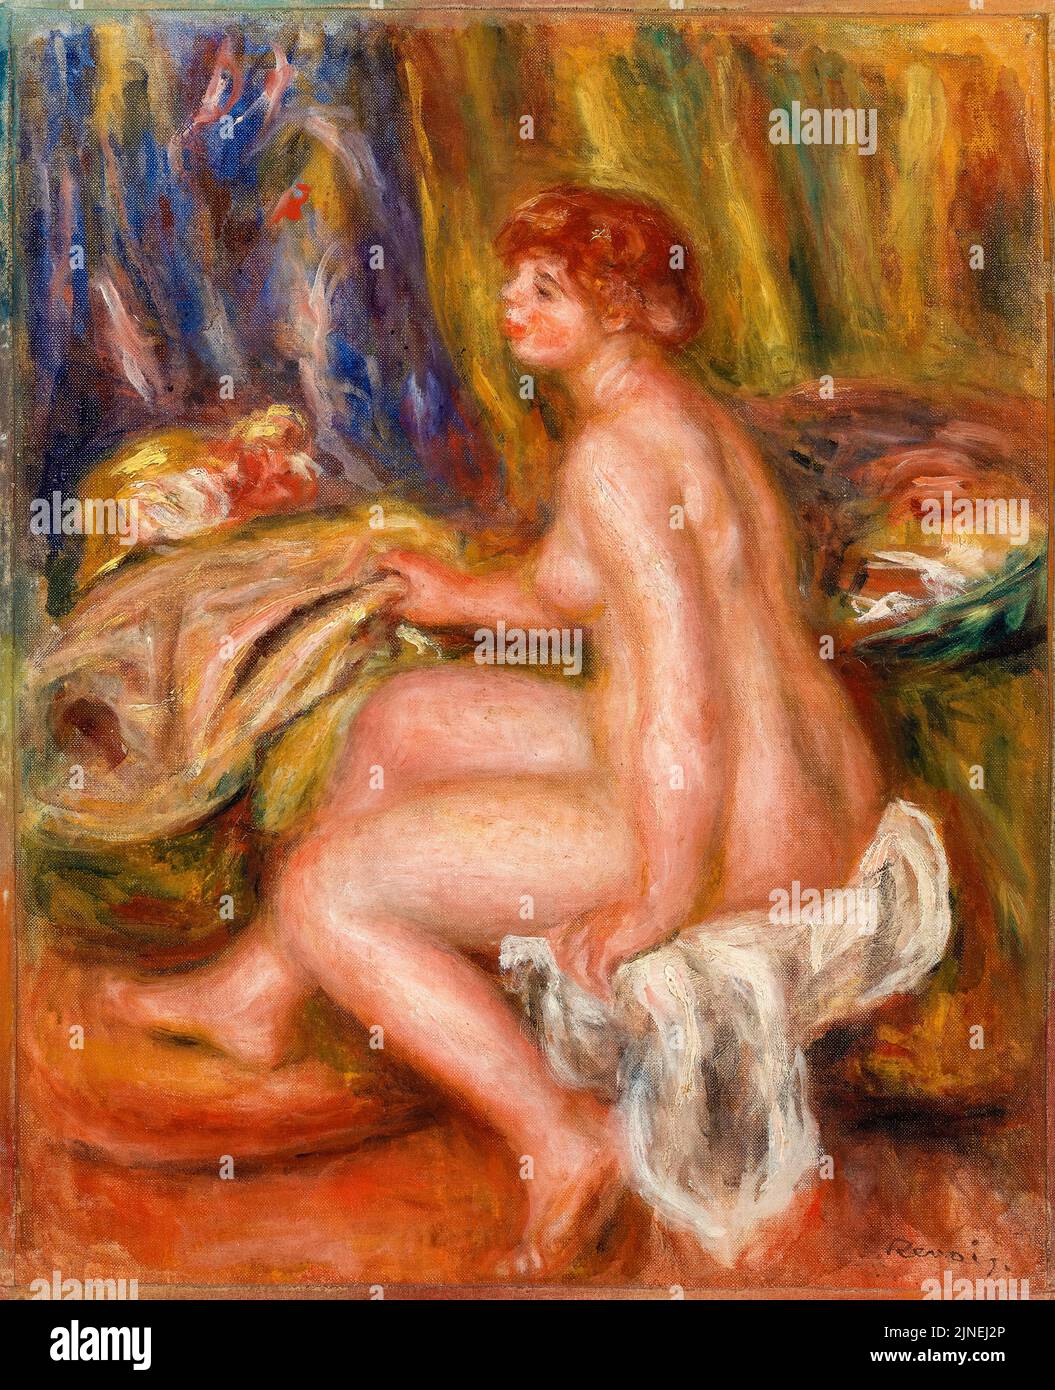 Pierre Auguste Renoir, Femme assise Nude, vue de profil, peinture à l'huile sur toile, vers 1917 Banque D'Images